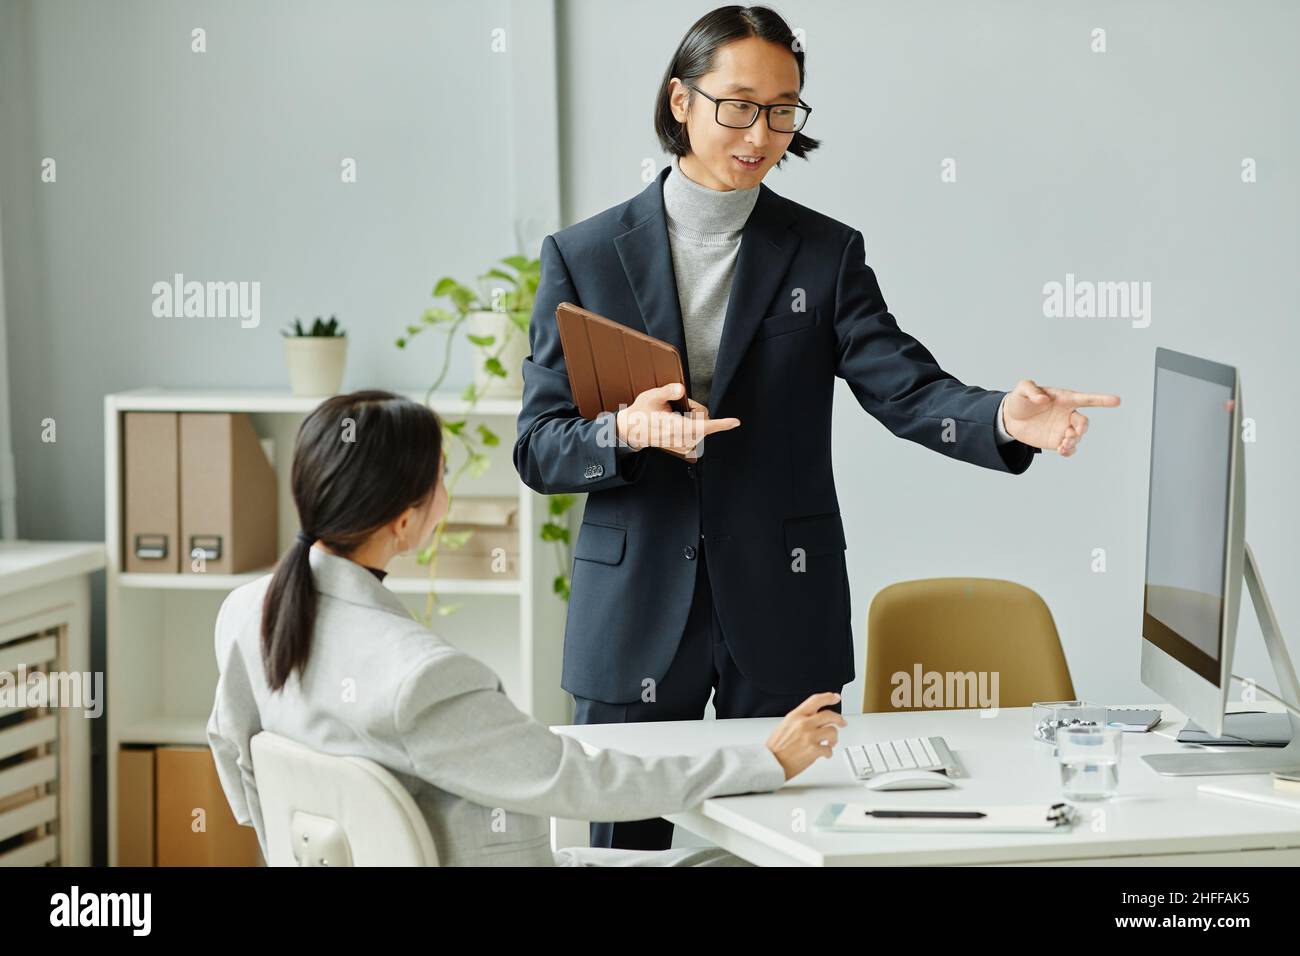 Portrait d'un homme d'affaires asiatique pointant vers un écran d'ordinateur tout en planifiant un projet avec une collègue féminine Banque D'Images